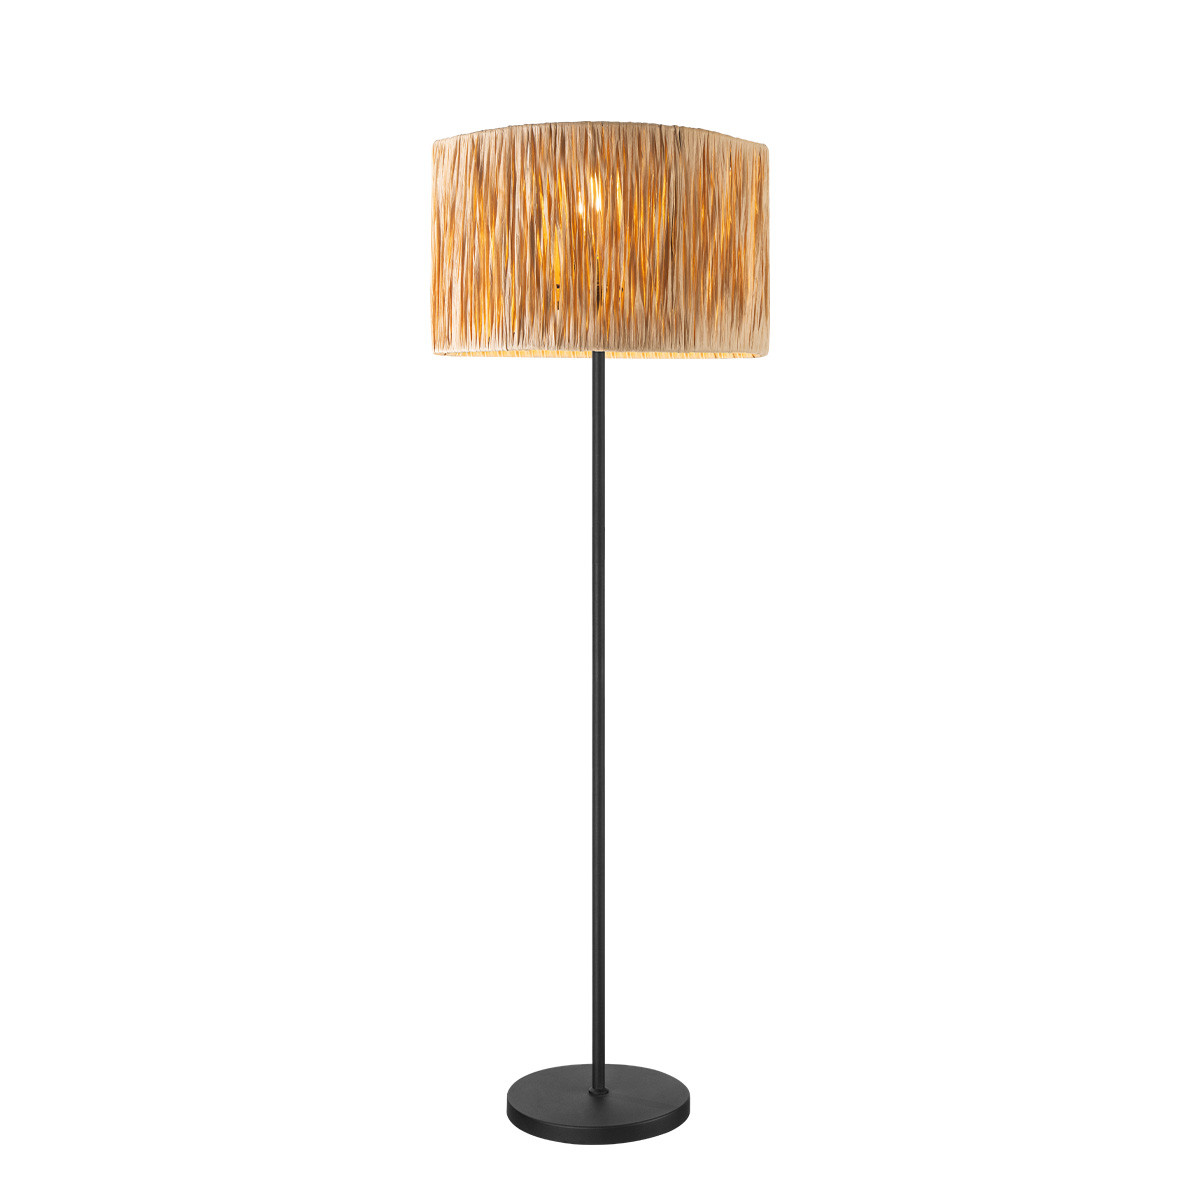 Tangla lighting - TLF7440-01NB - LED Floor lamp 1 Light - sea grass - sand black + natural - standard - E27